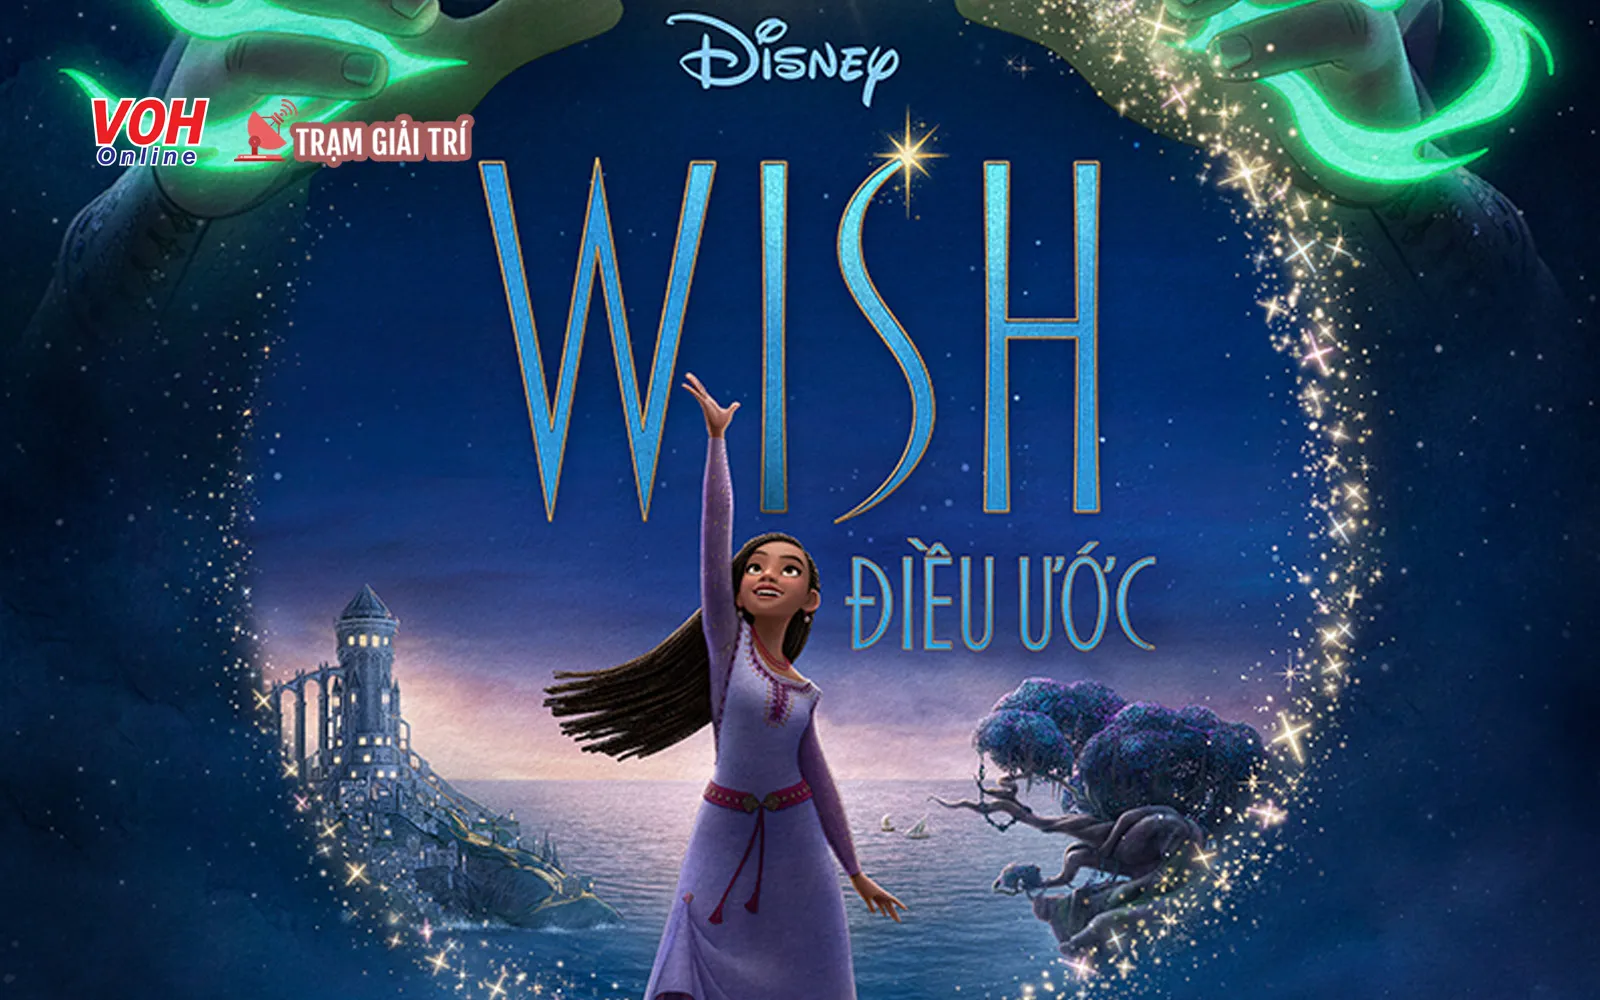 WISH - điều ước của Disney sau 100 năm hành trình